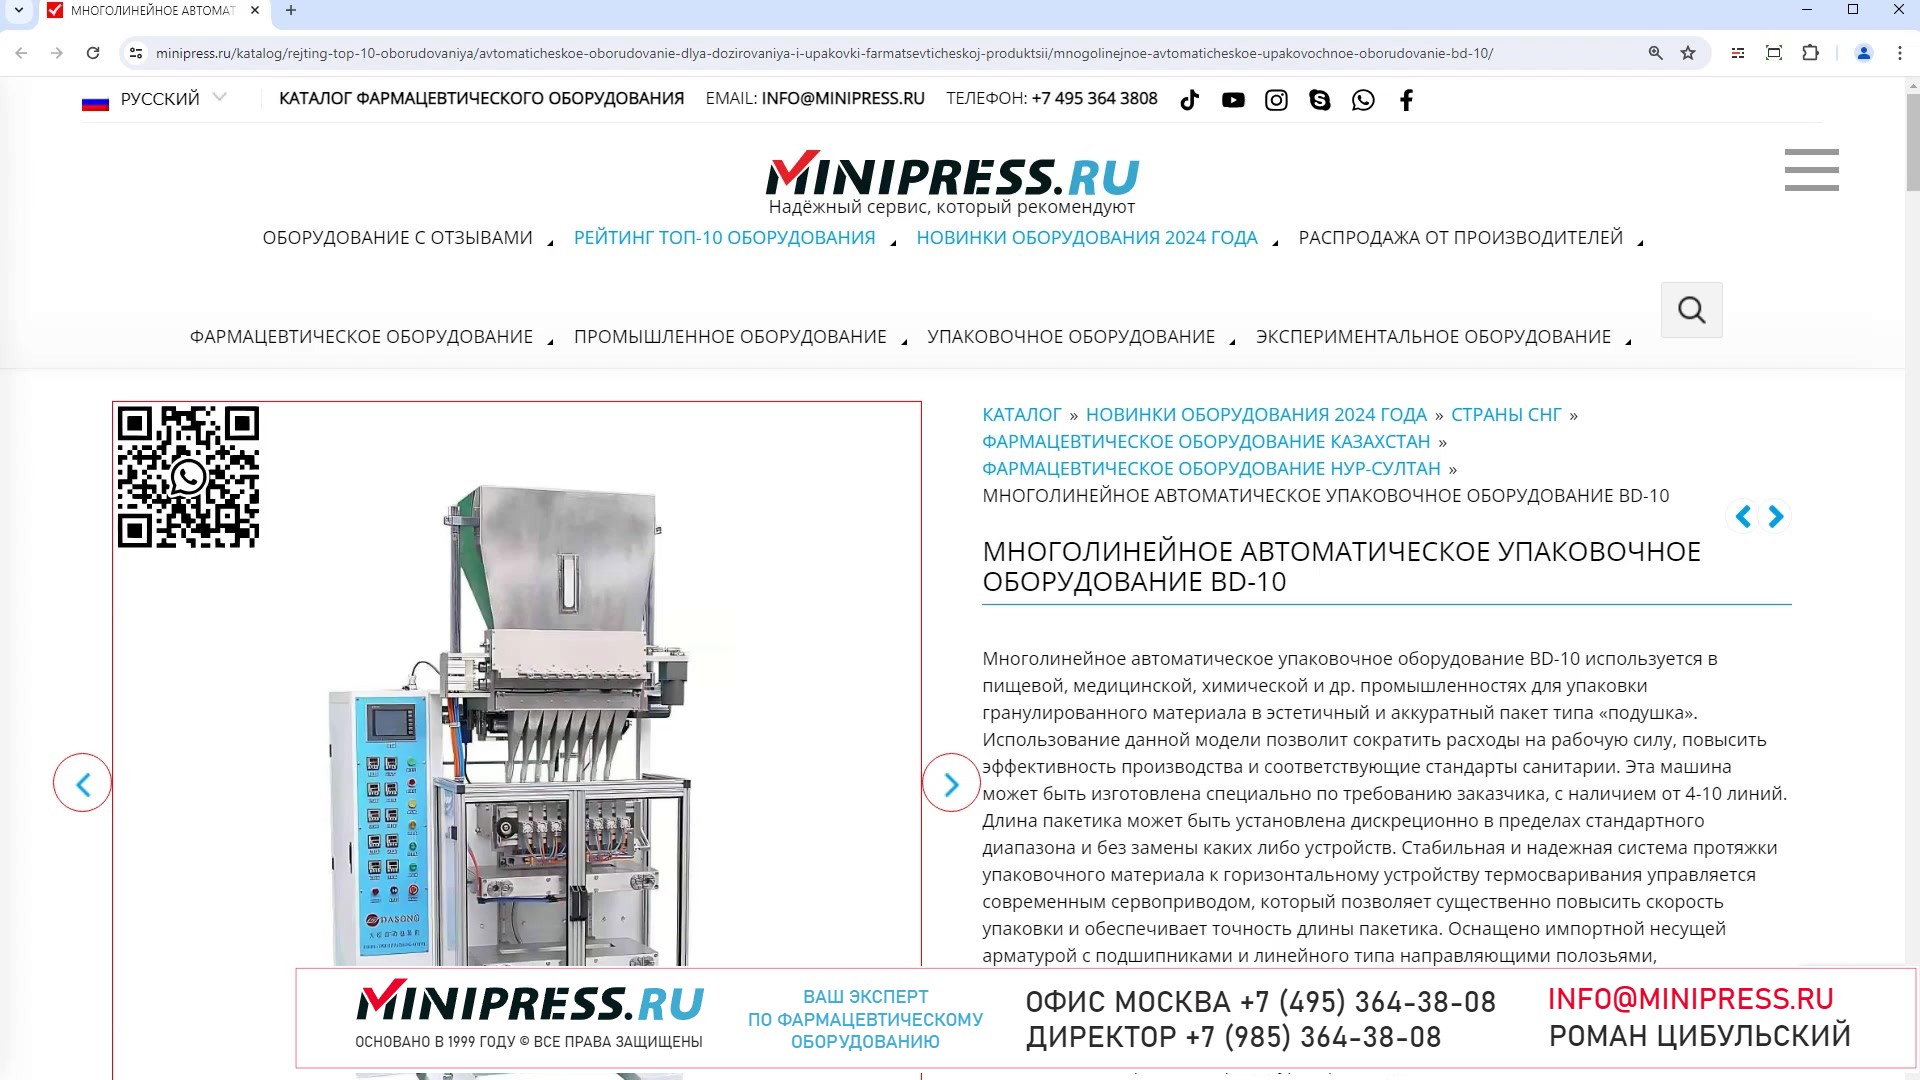 Minipress.ru Многолинейное автоматическое упаковочное оборудование BD-10